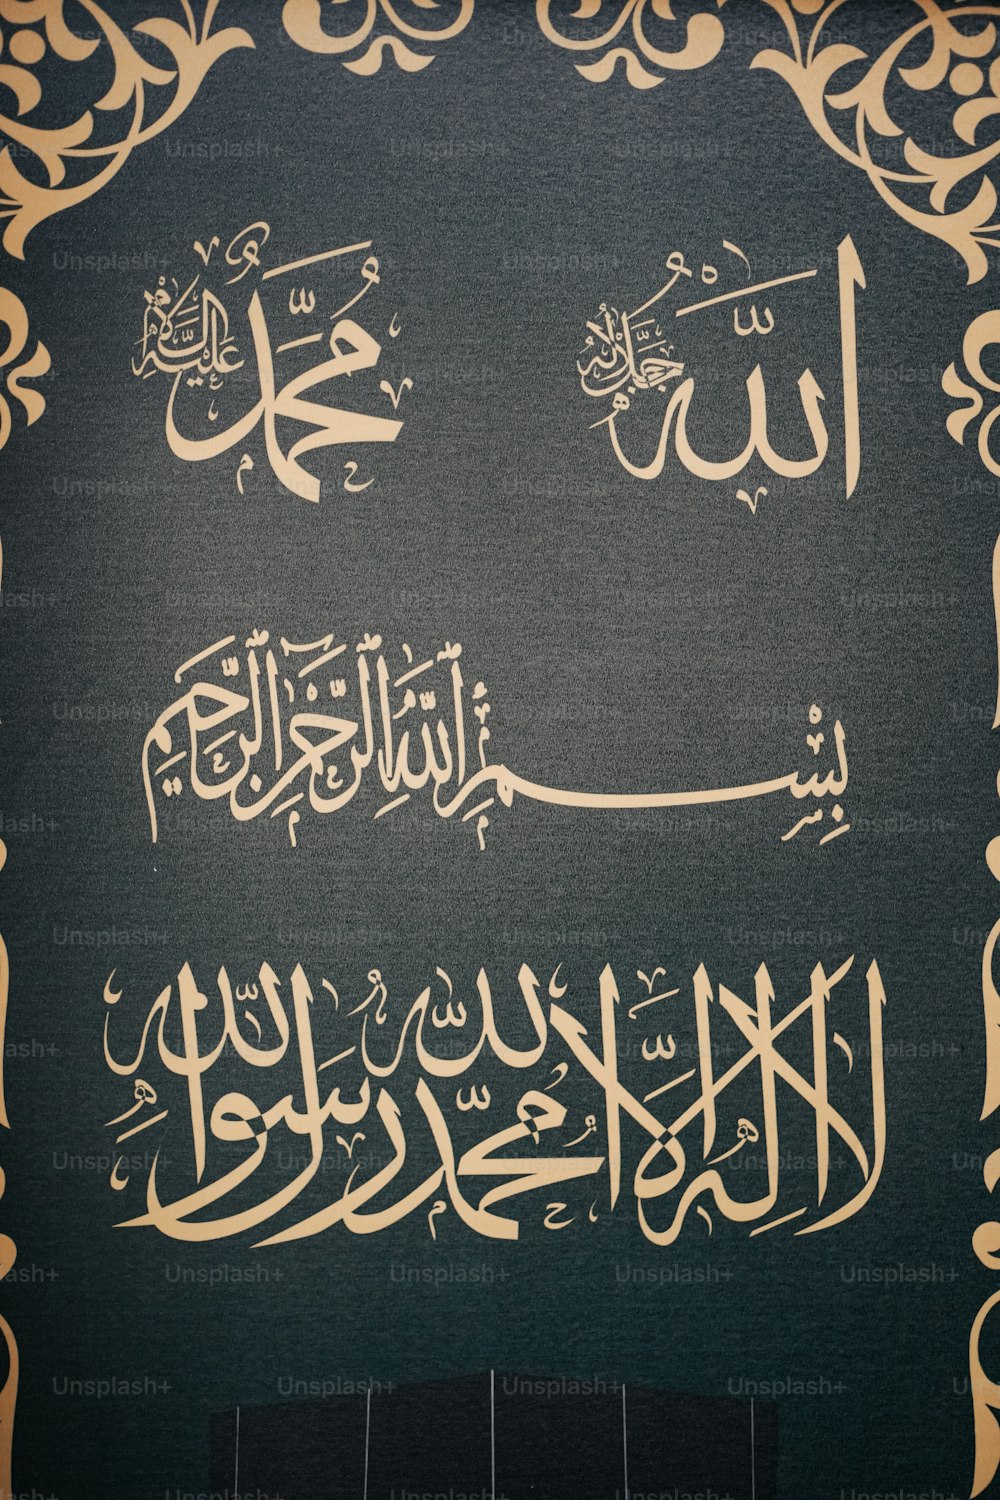 Ein Bild arabischer Schrift an einer Wand